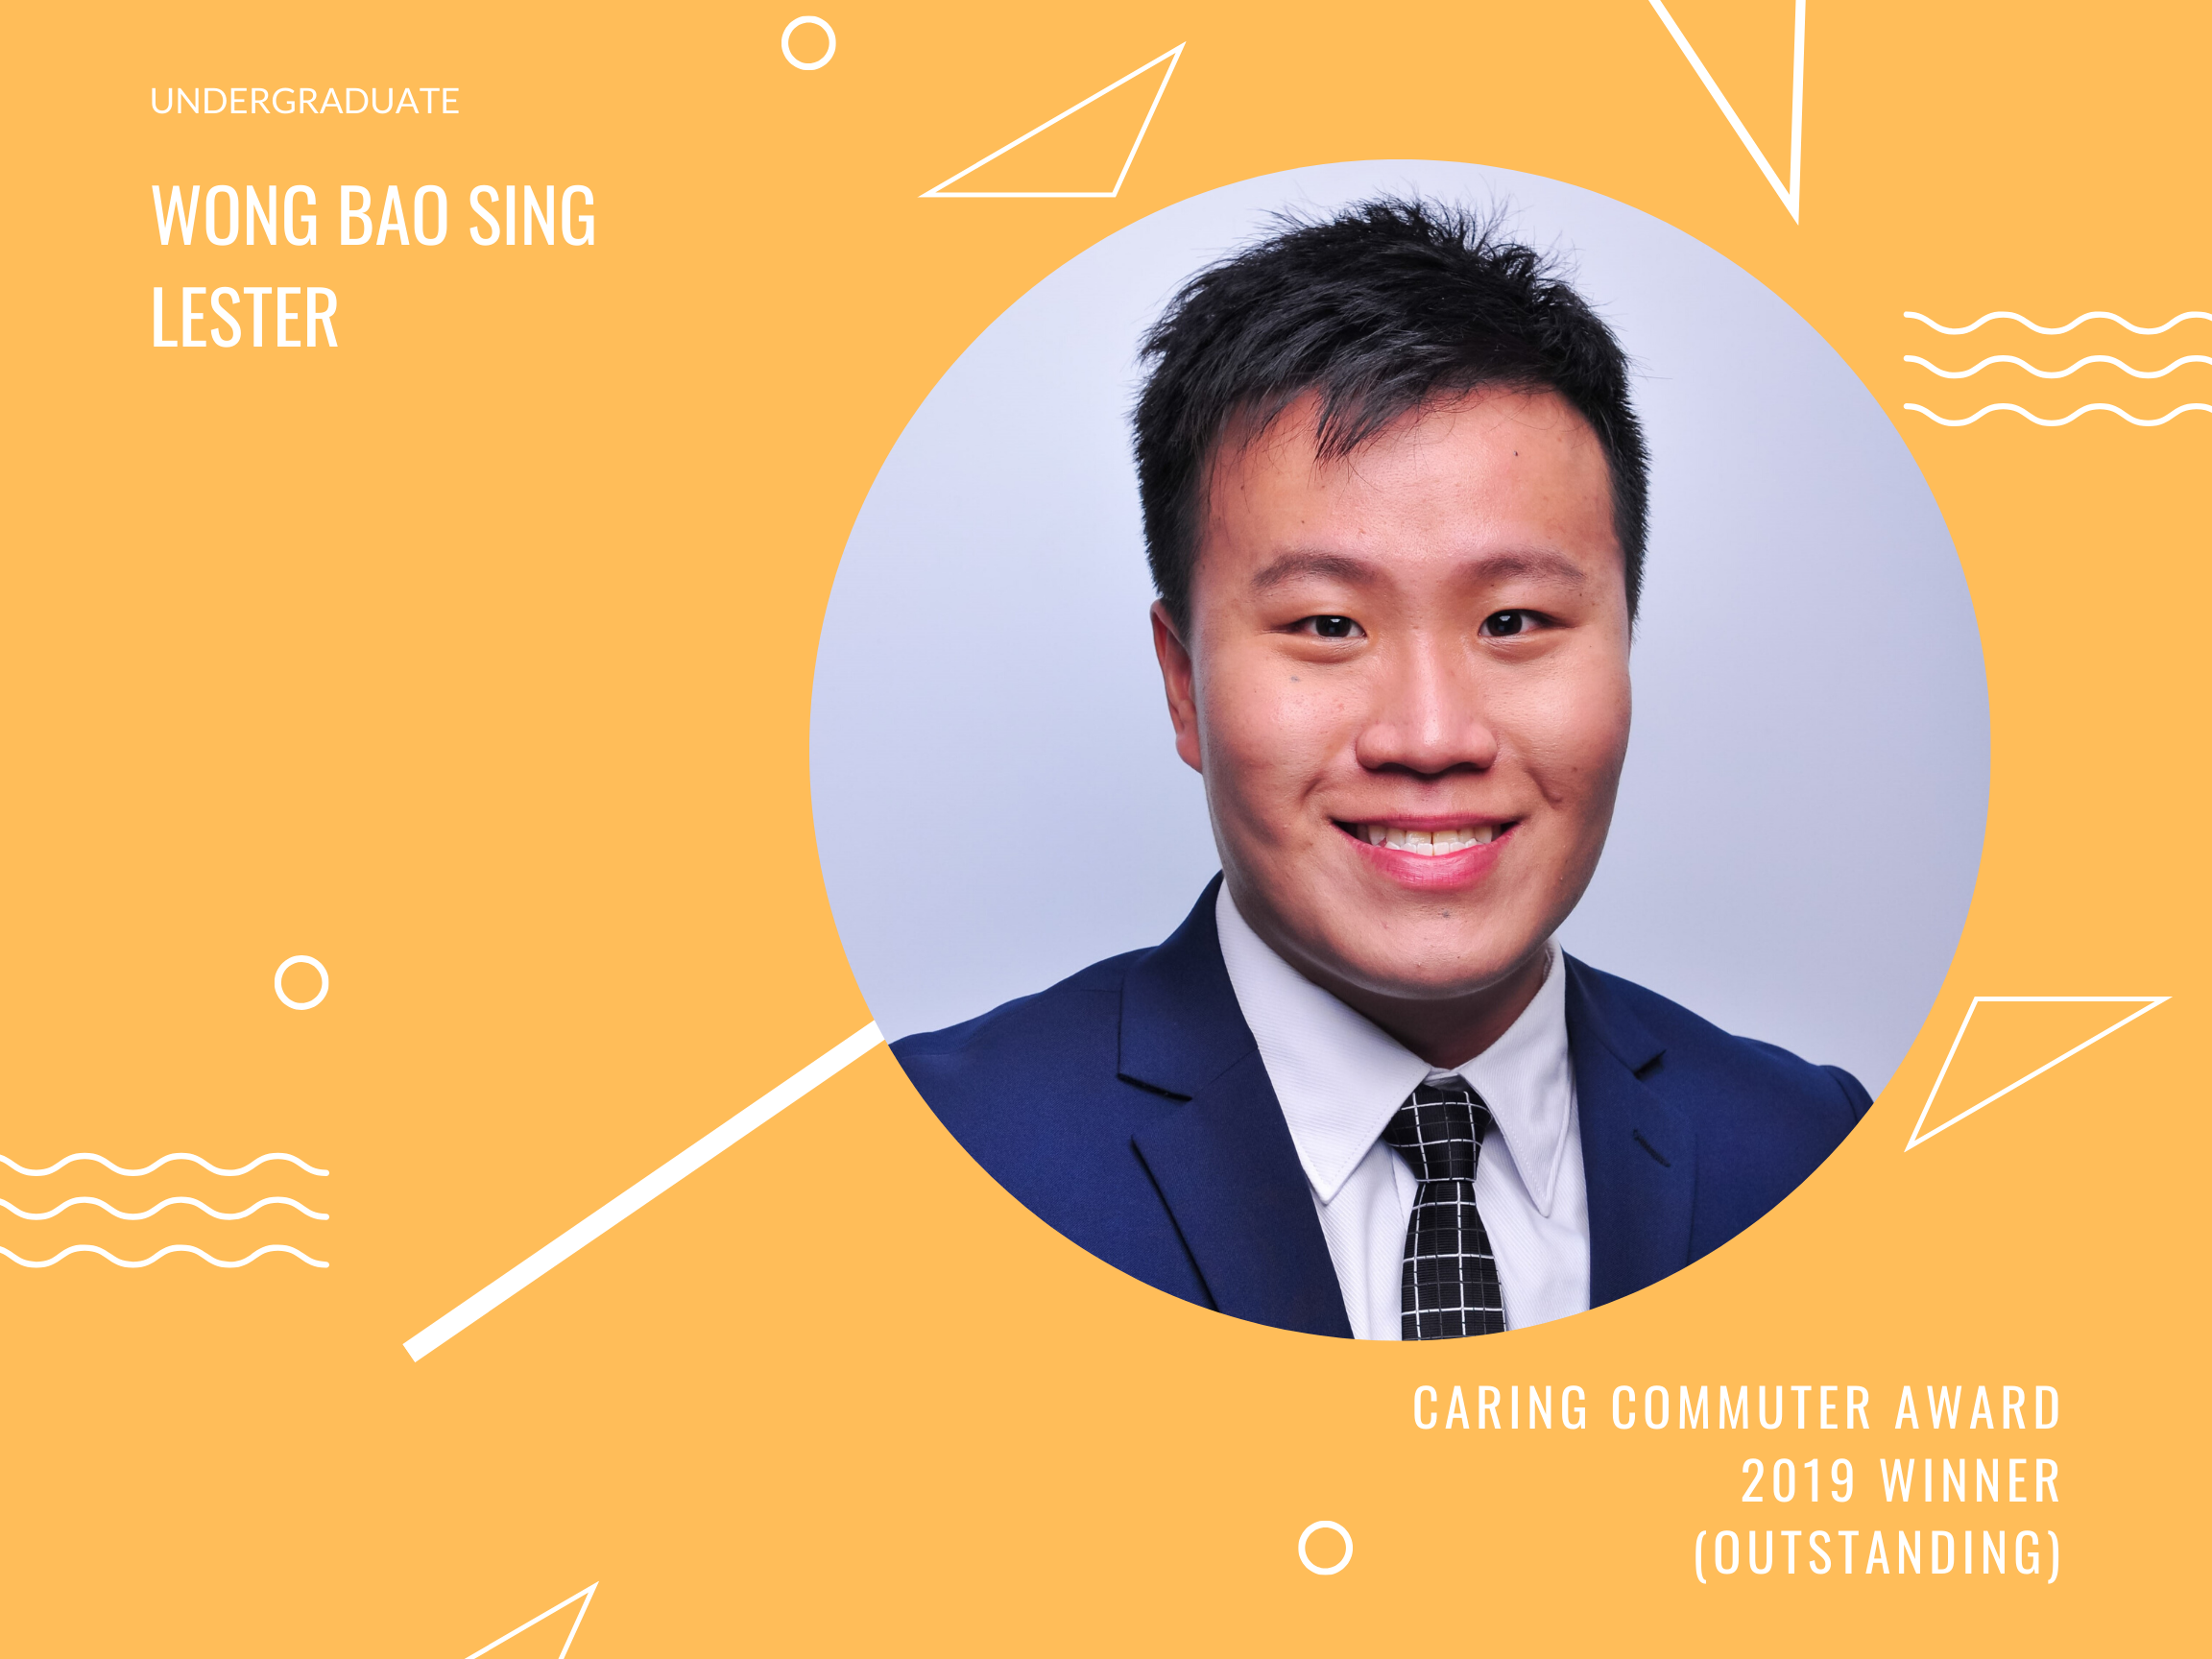 Meet Lester Wong, Undergraduate and Caring Commuter Award 2019 Outstanding Winner